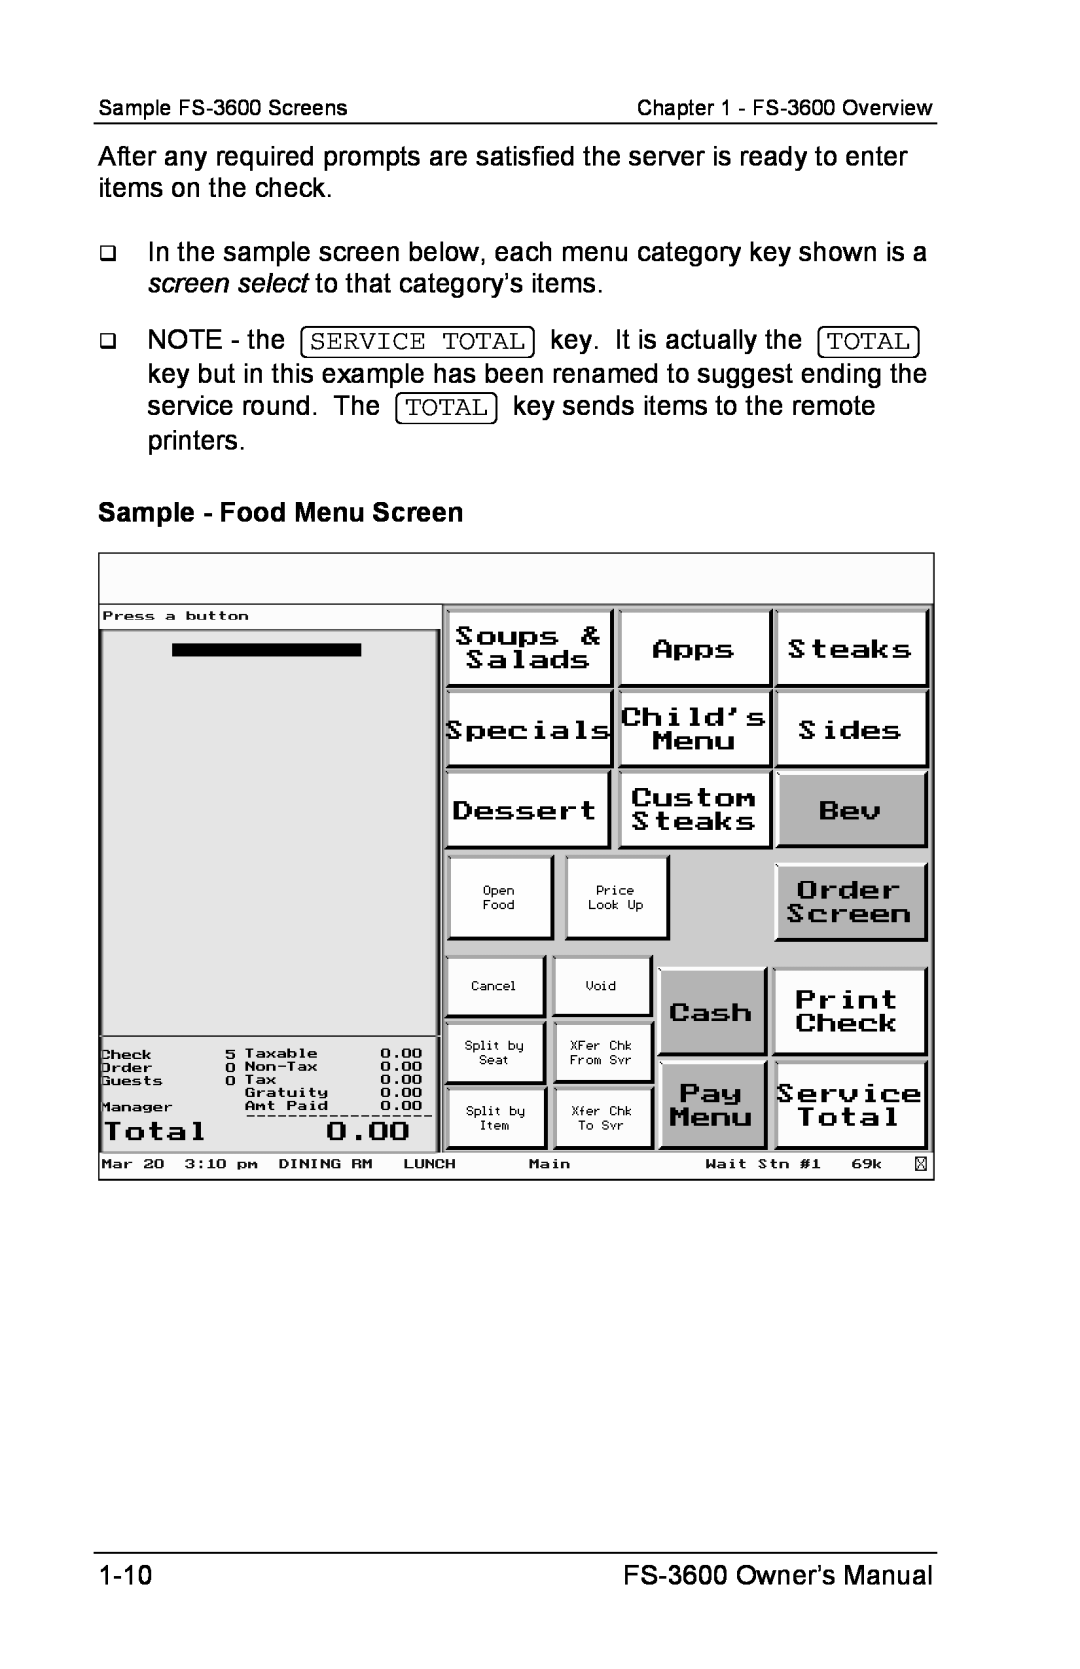 Toshiba FS-3600 owner manual Sample - Food Menu Screen 